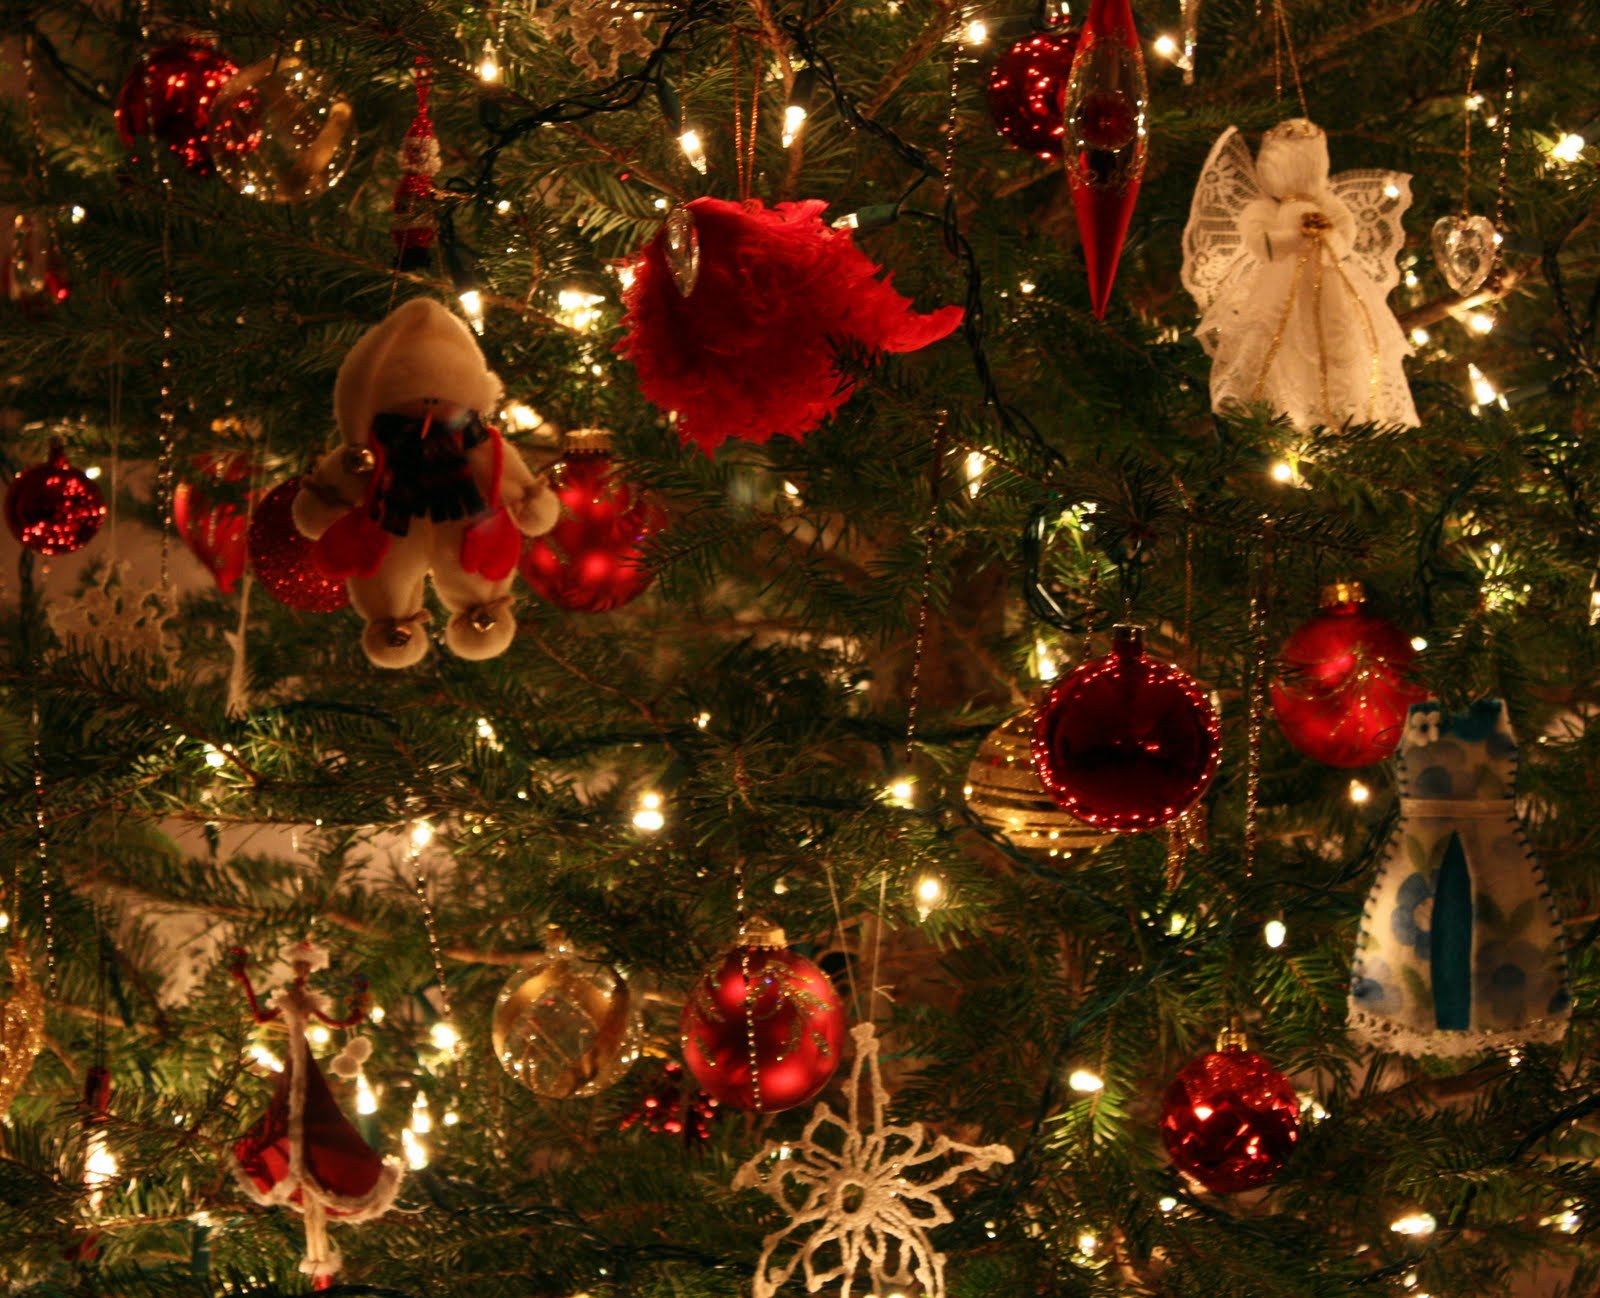 クリスマスの装飾の壁紙,クリスマスツリー,クリスマスの飾り,クリスマスオーナメント,クリスマス,木